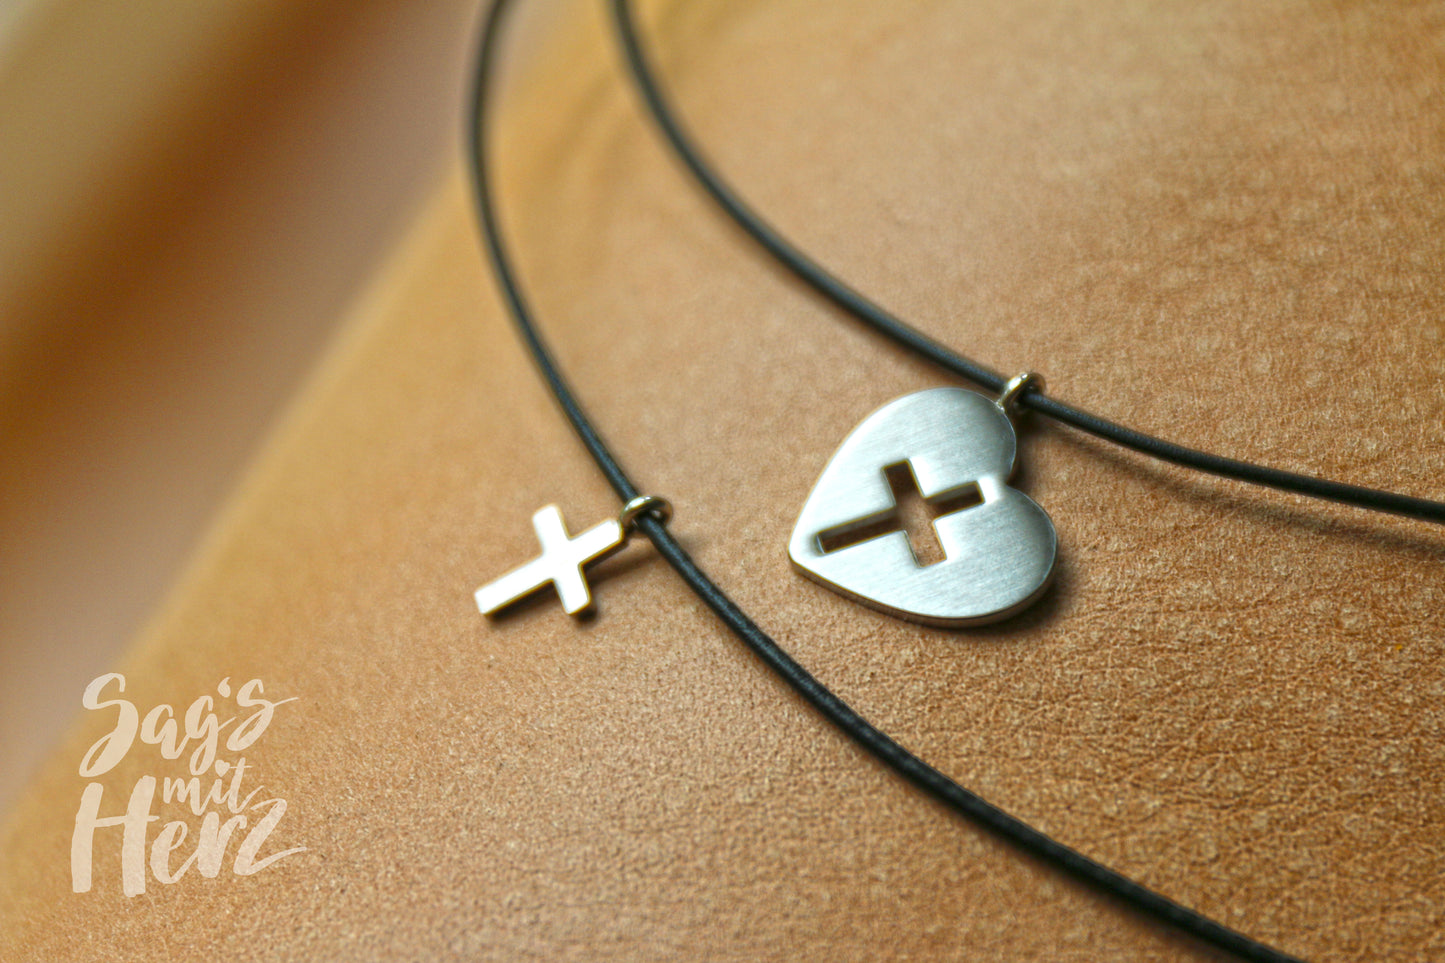 Thankgoods Freundschaft-Schmuckset Herz/Kreuz für 2 Menschen die Ihre Liebe auf eine ganz besondere Art teilen möchten!